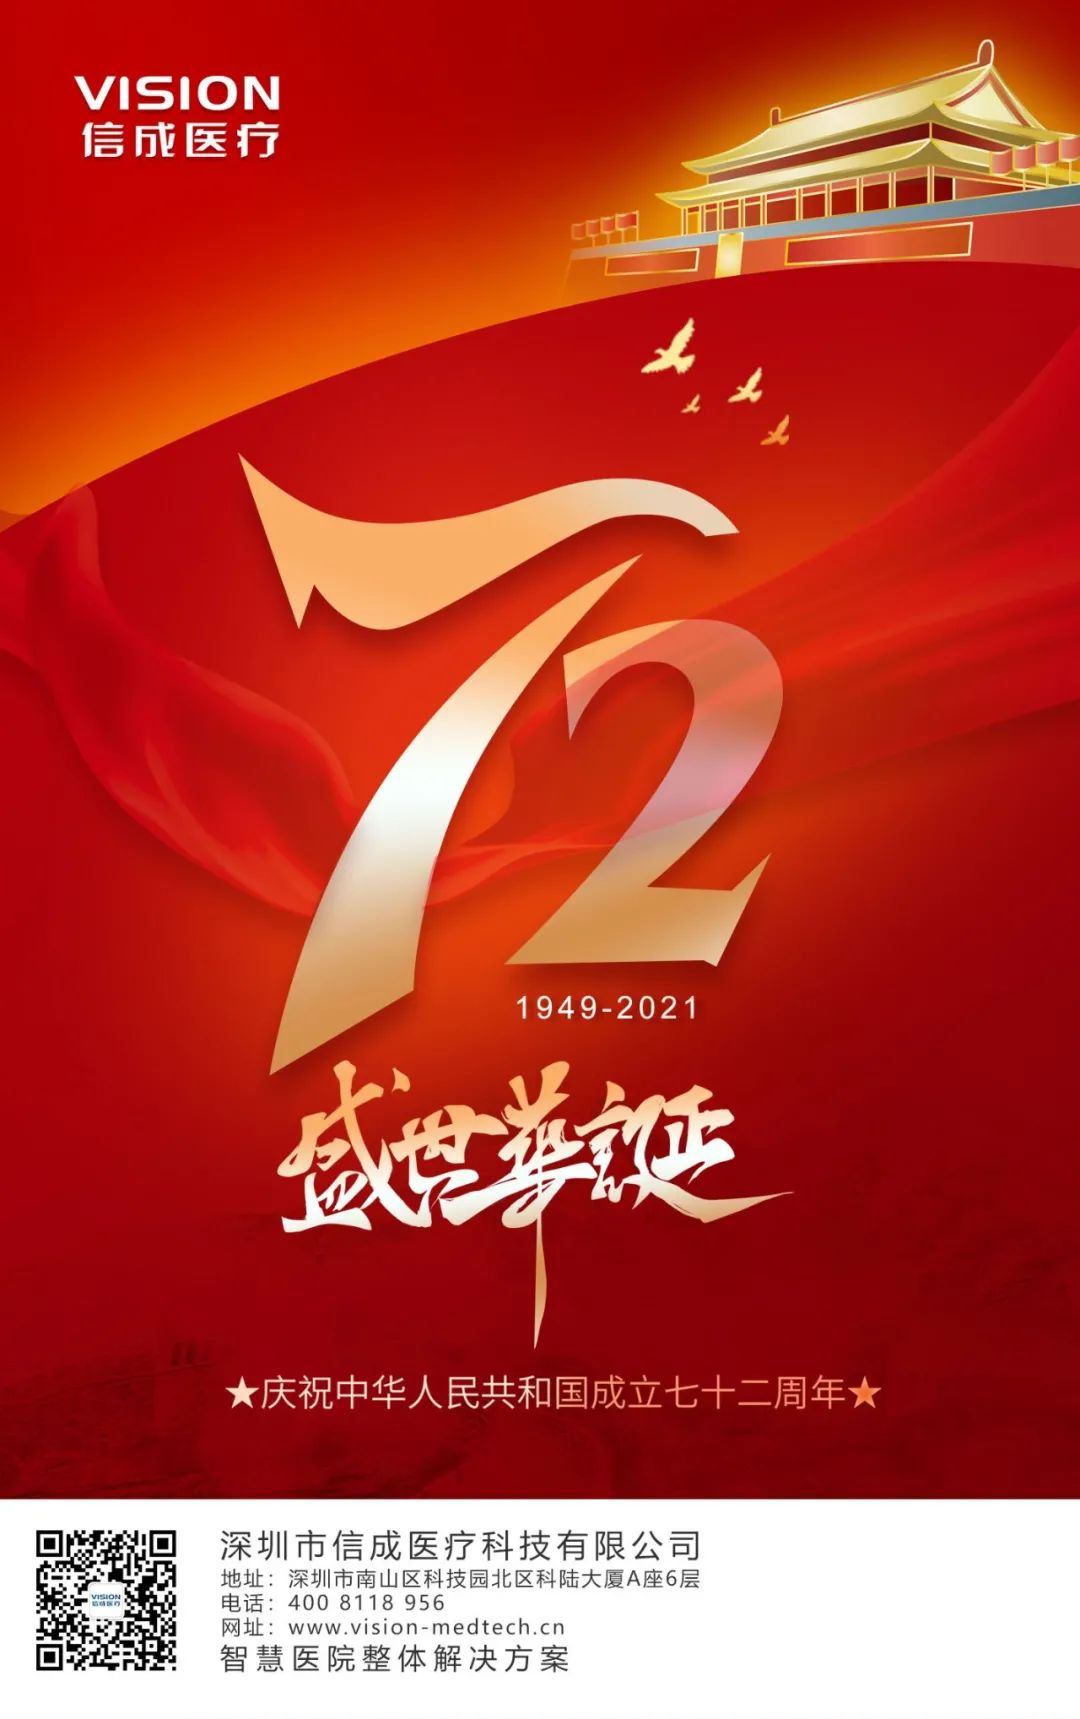 庆祝祖国72周年华诞图片